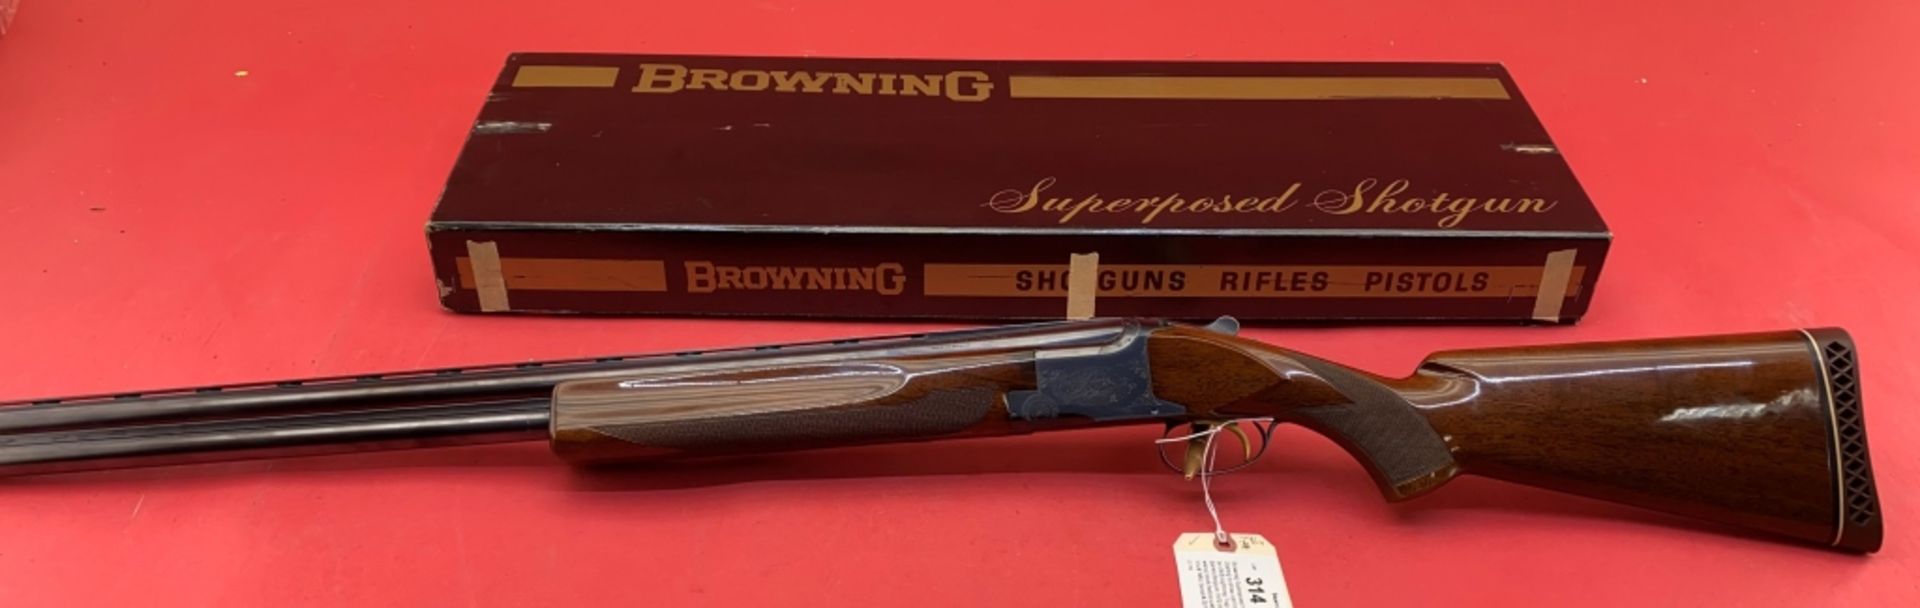 Browning Superposed 12 ga Shotgun - Image 16 of 16